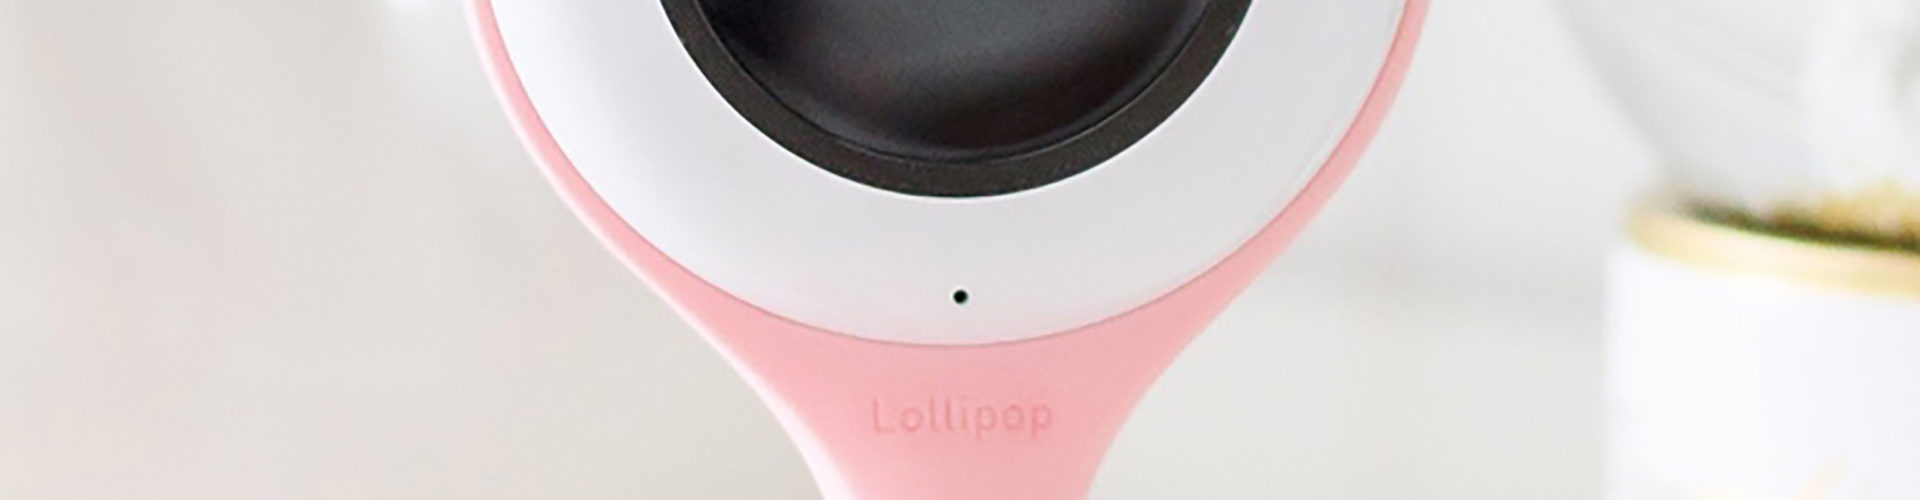 Lollipop Smart Wi-Fi-Based Baby Camera